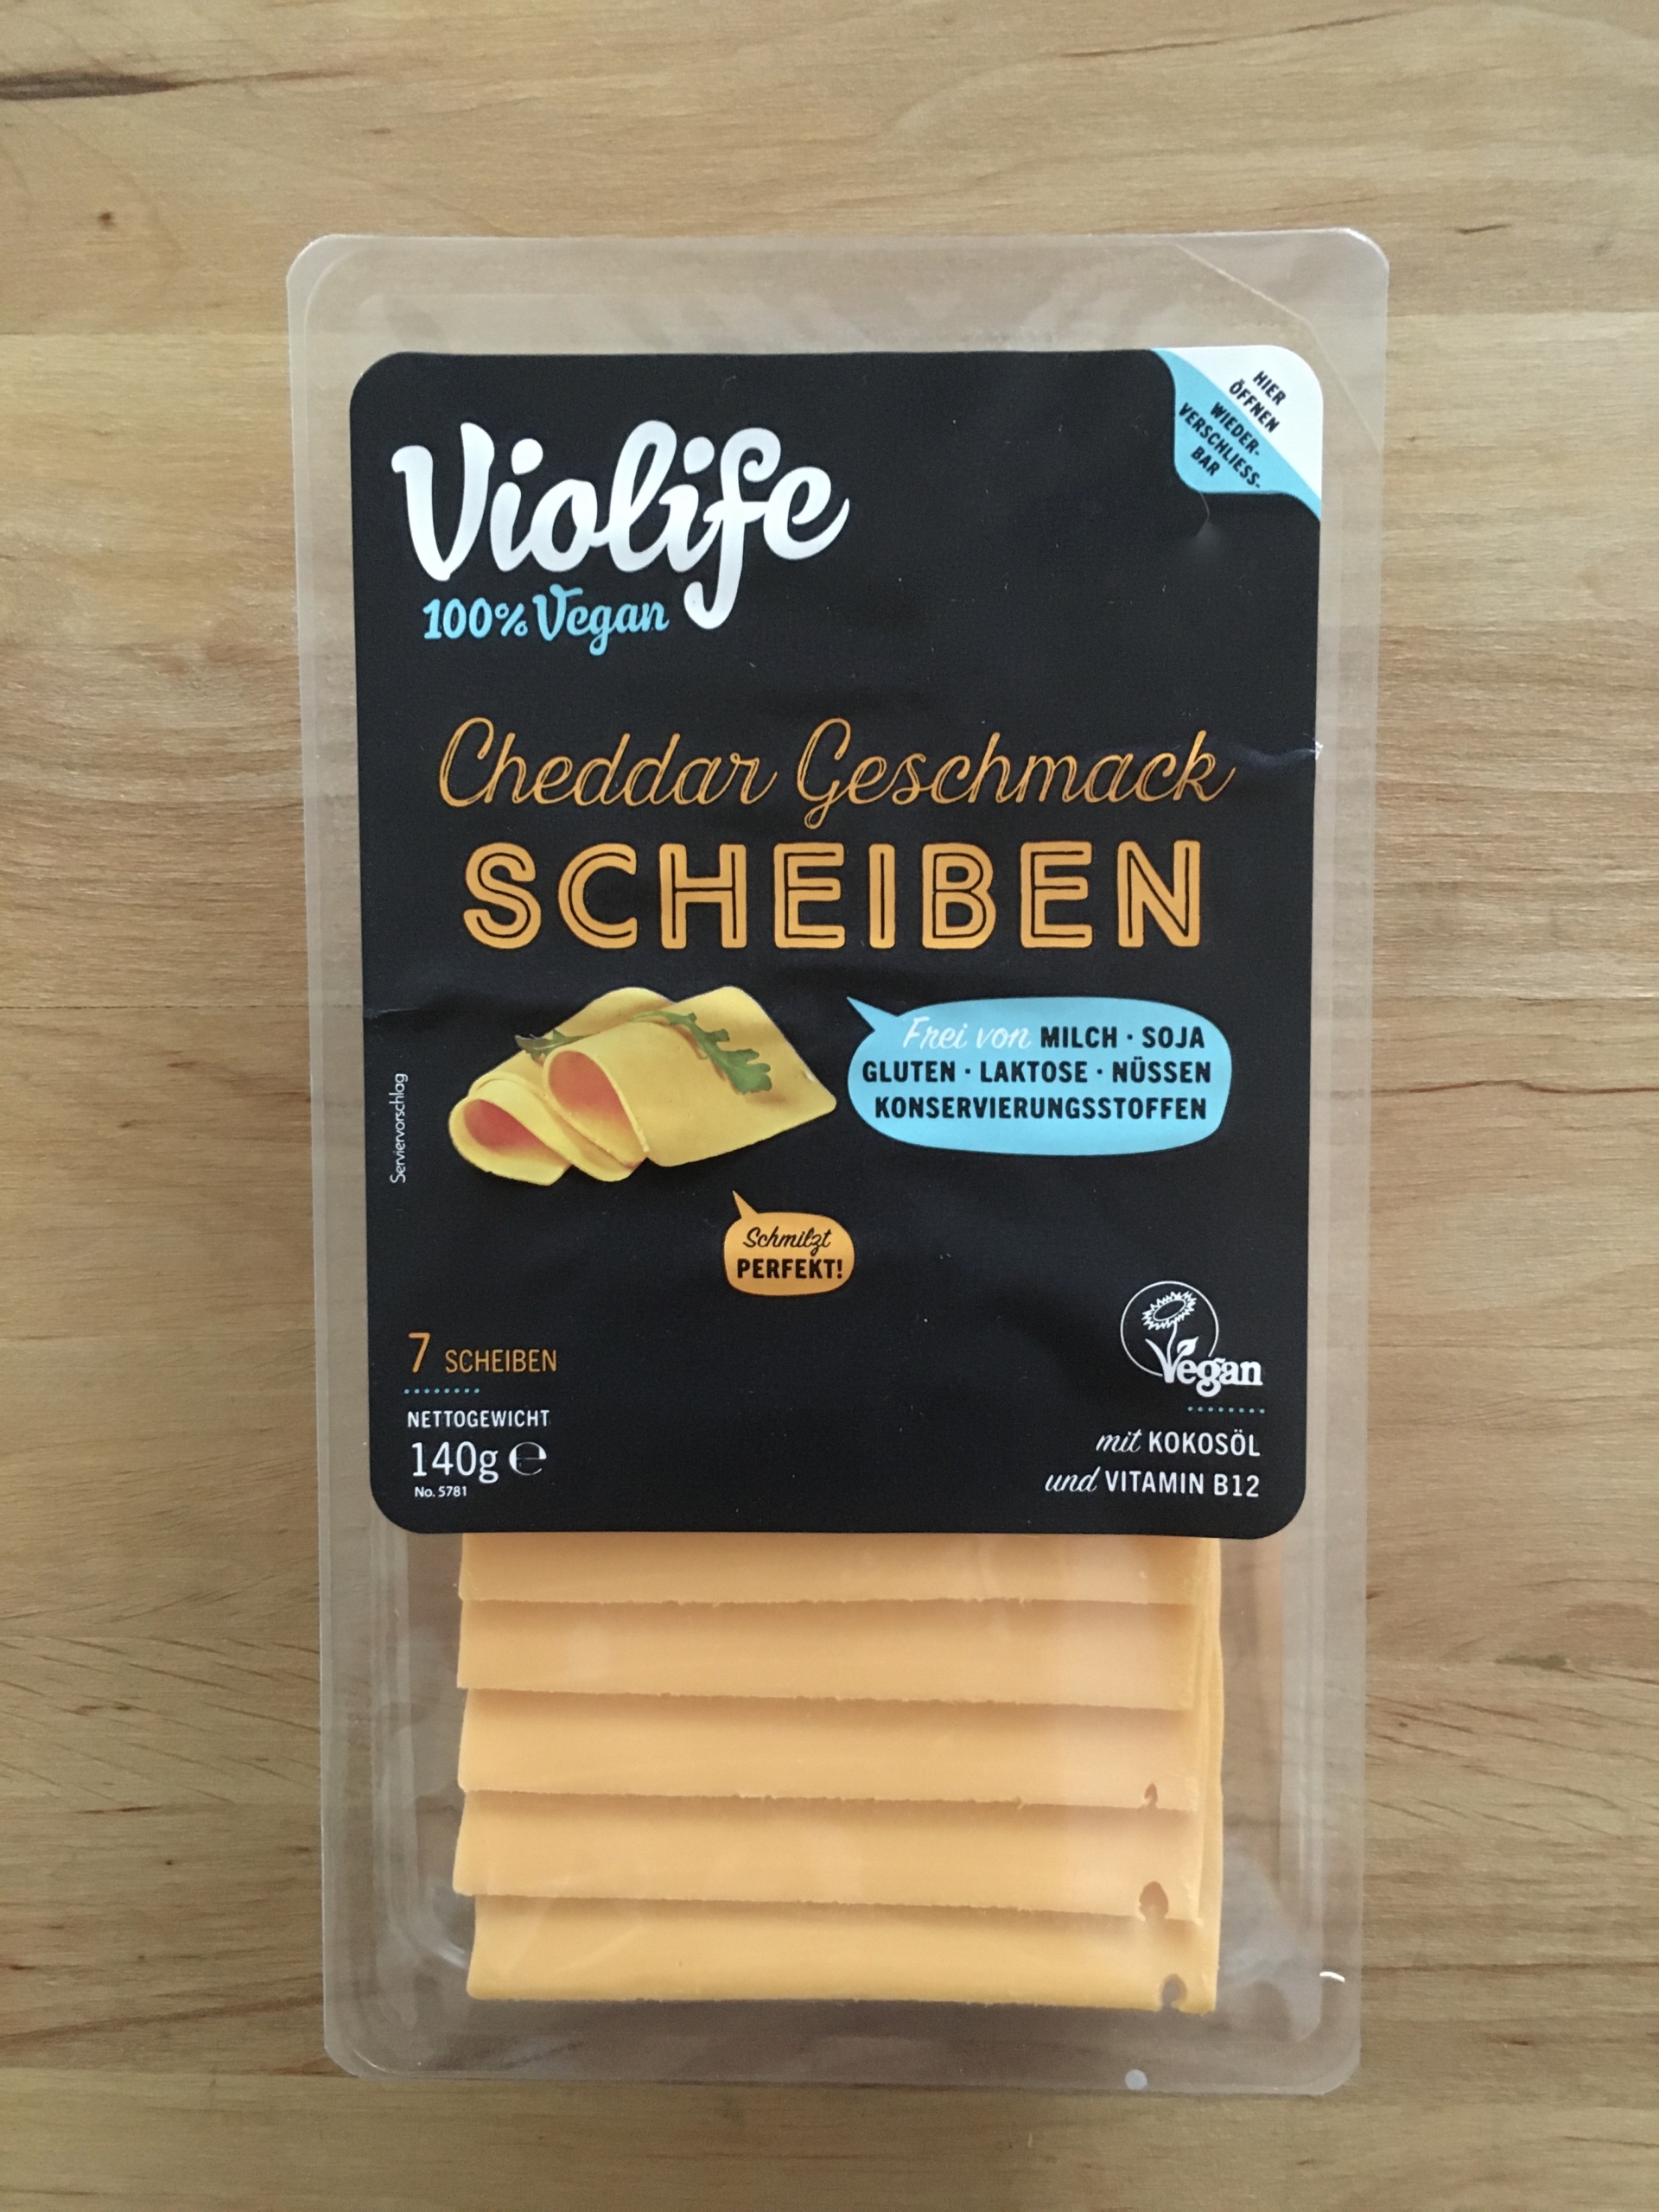 Veganer Käse von Violife - Vielfältige Käsealternativen - Vegan im